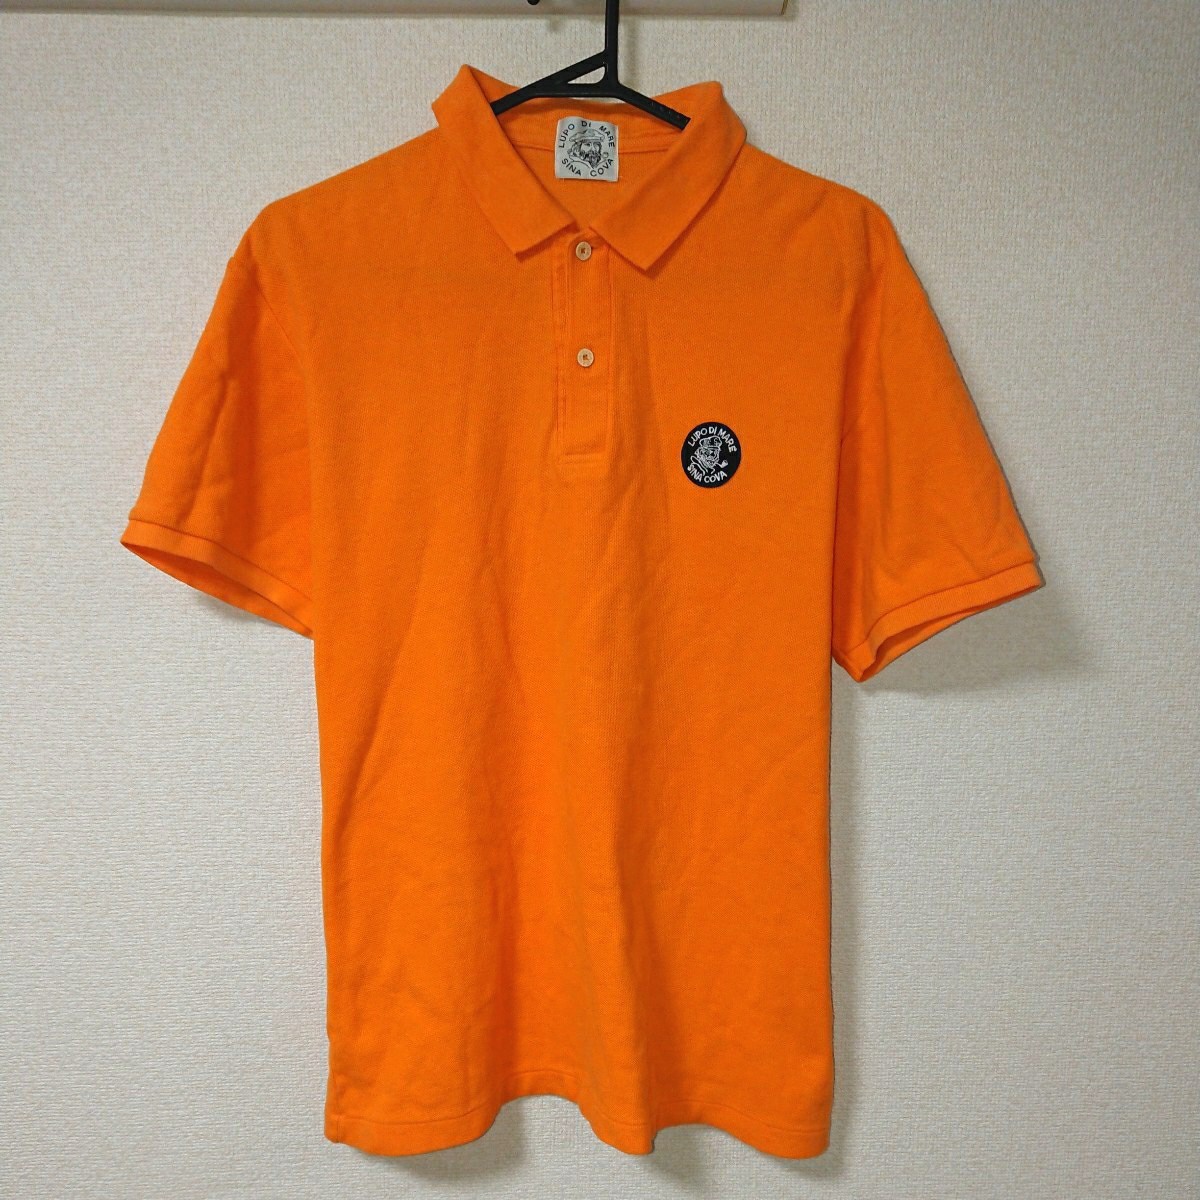  SINA COVA シナコバ LUPO DI MARE マリンルック トップス シャツ 半袖 ポロシャツ オレンジ ロゴ サイズ M 人気 定番 の画像1